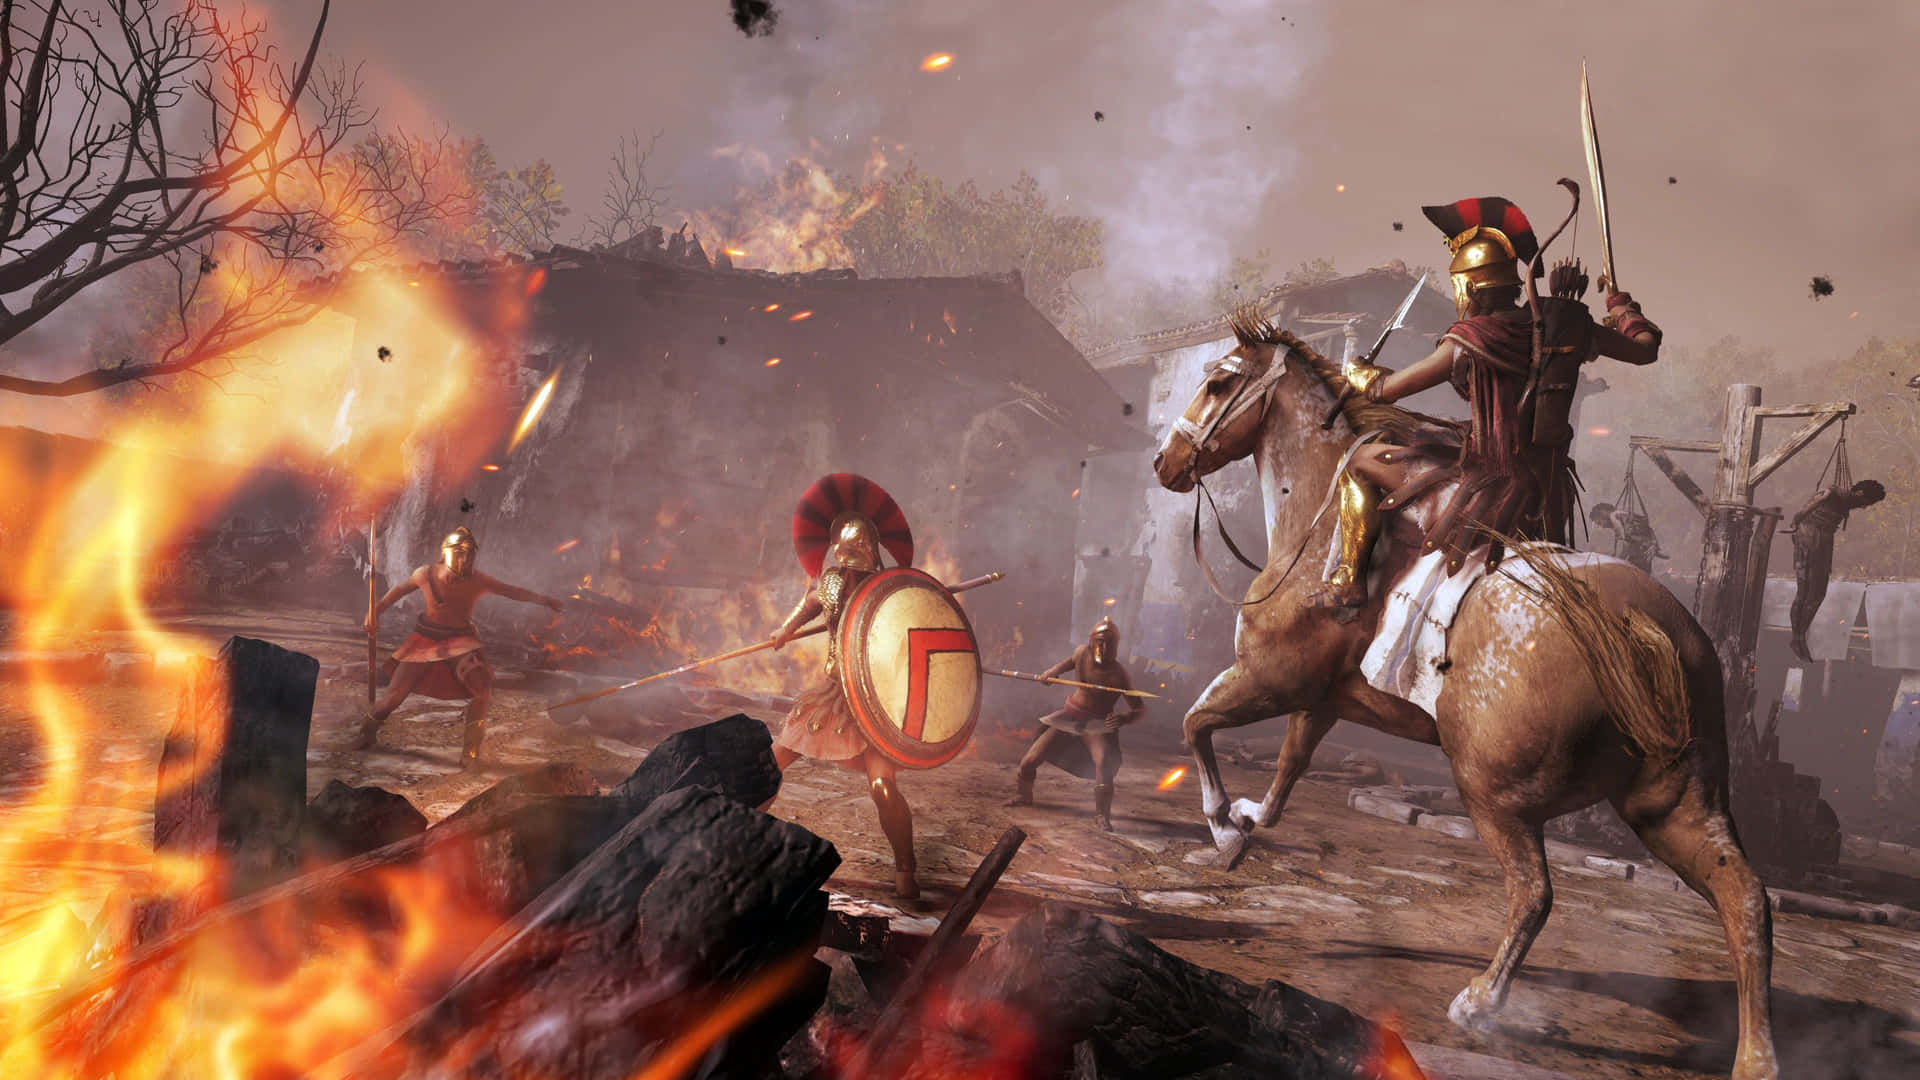 “Udforsk det gamle Grækenland i 4K med Assassin's Creed Odyssey.”